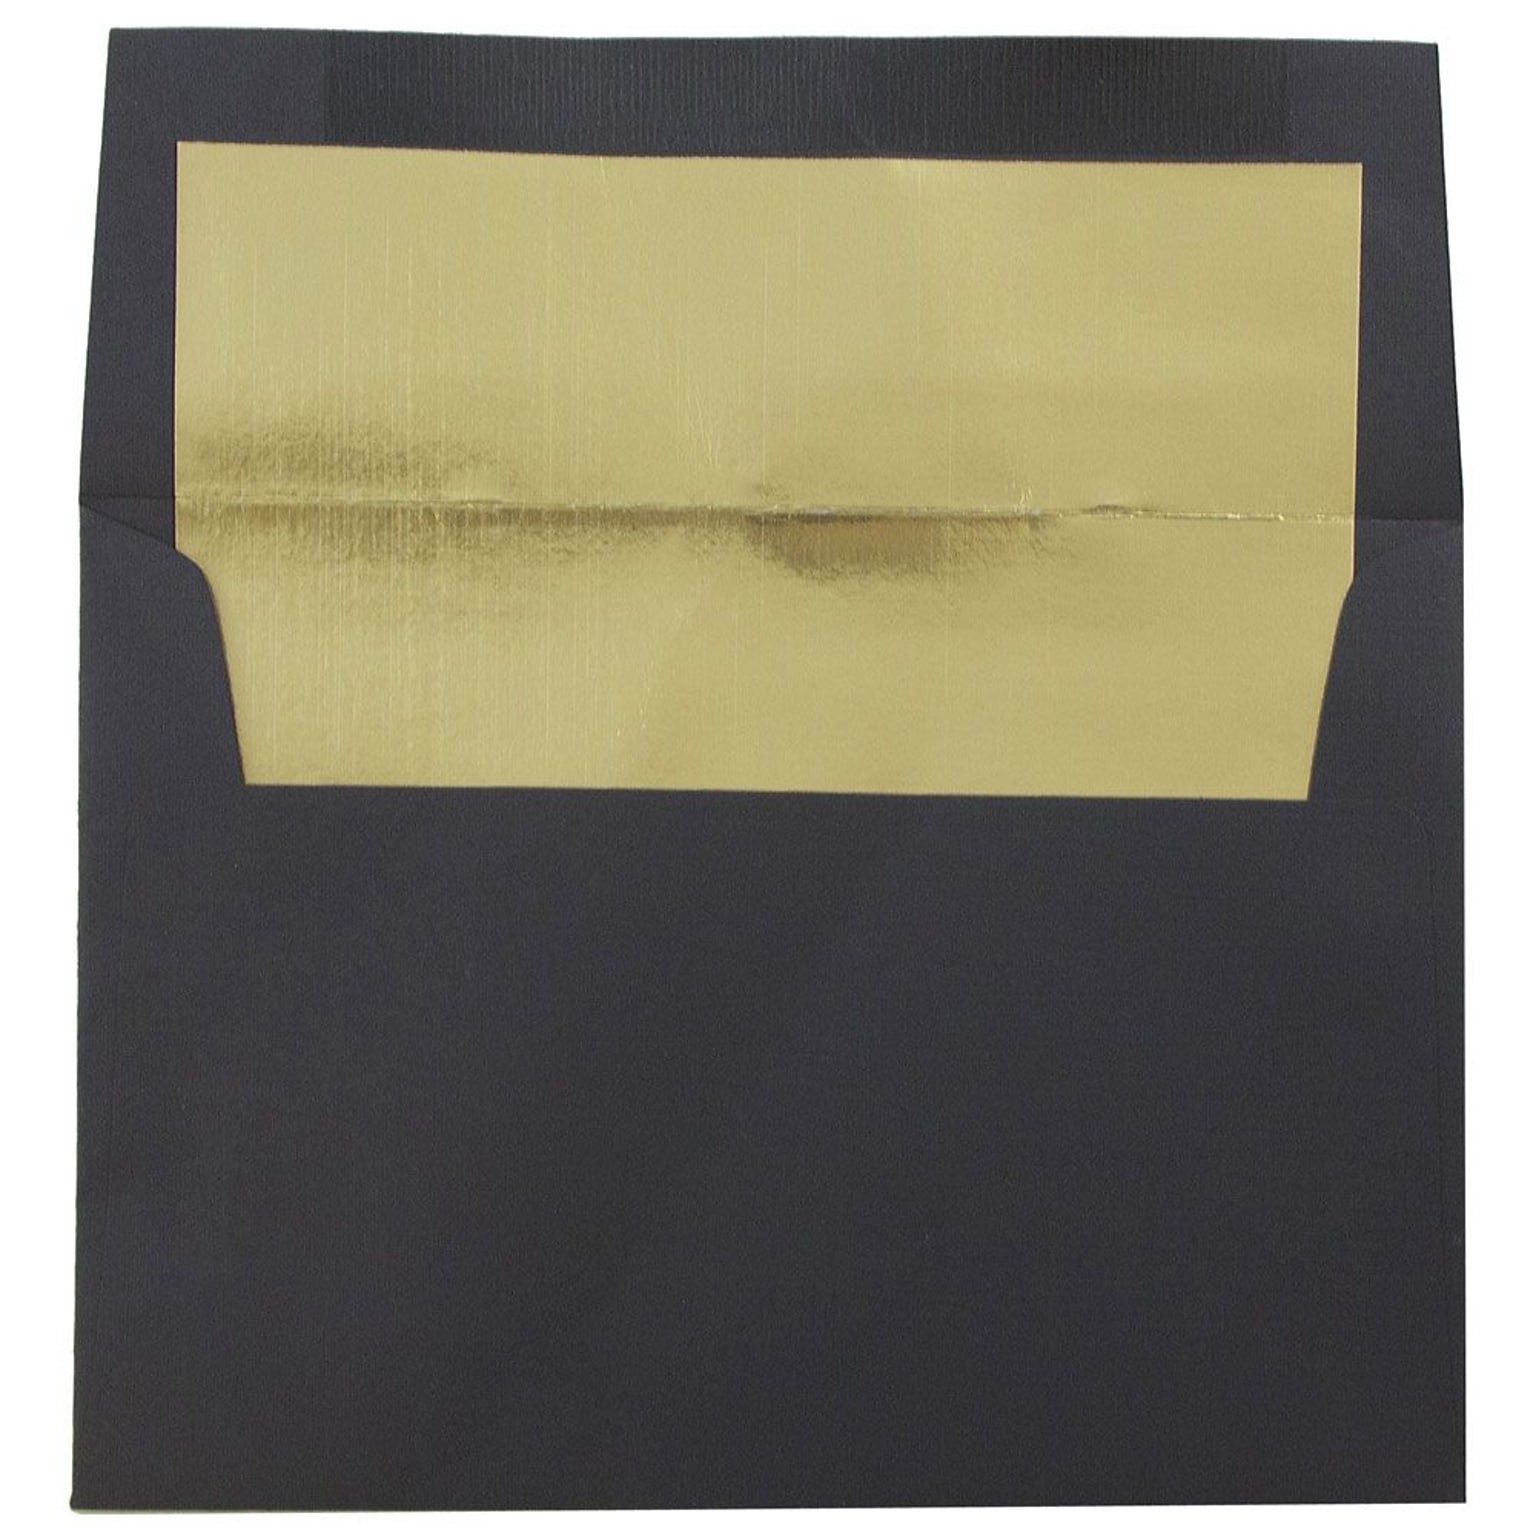 JAM Paper A6 Foil Lined Invitation Envelopes, 4.75 x 6.5, Black Linen with Gold Foil, 50/Pack (3243678I)